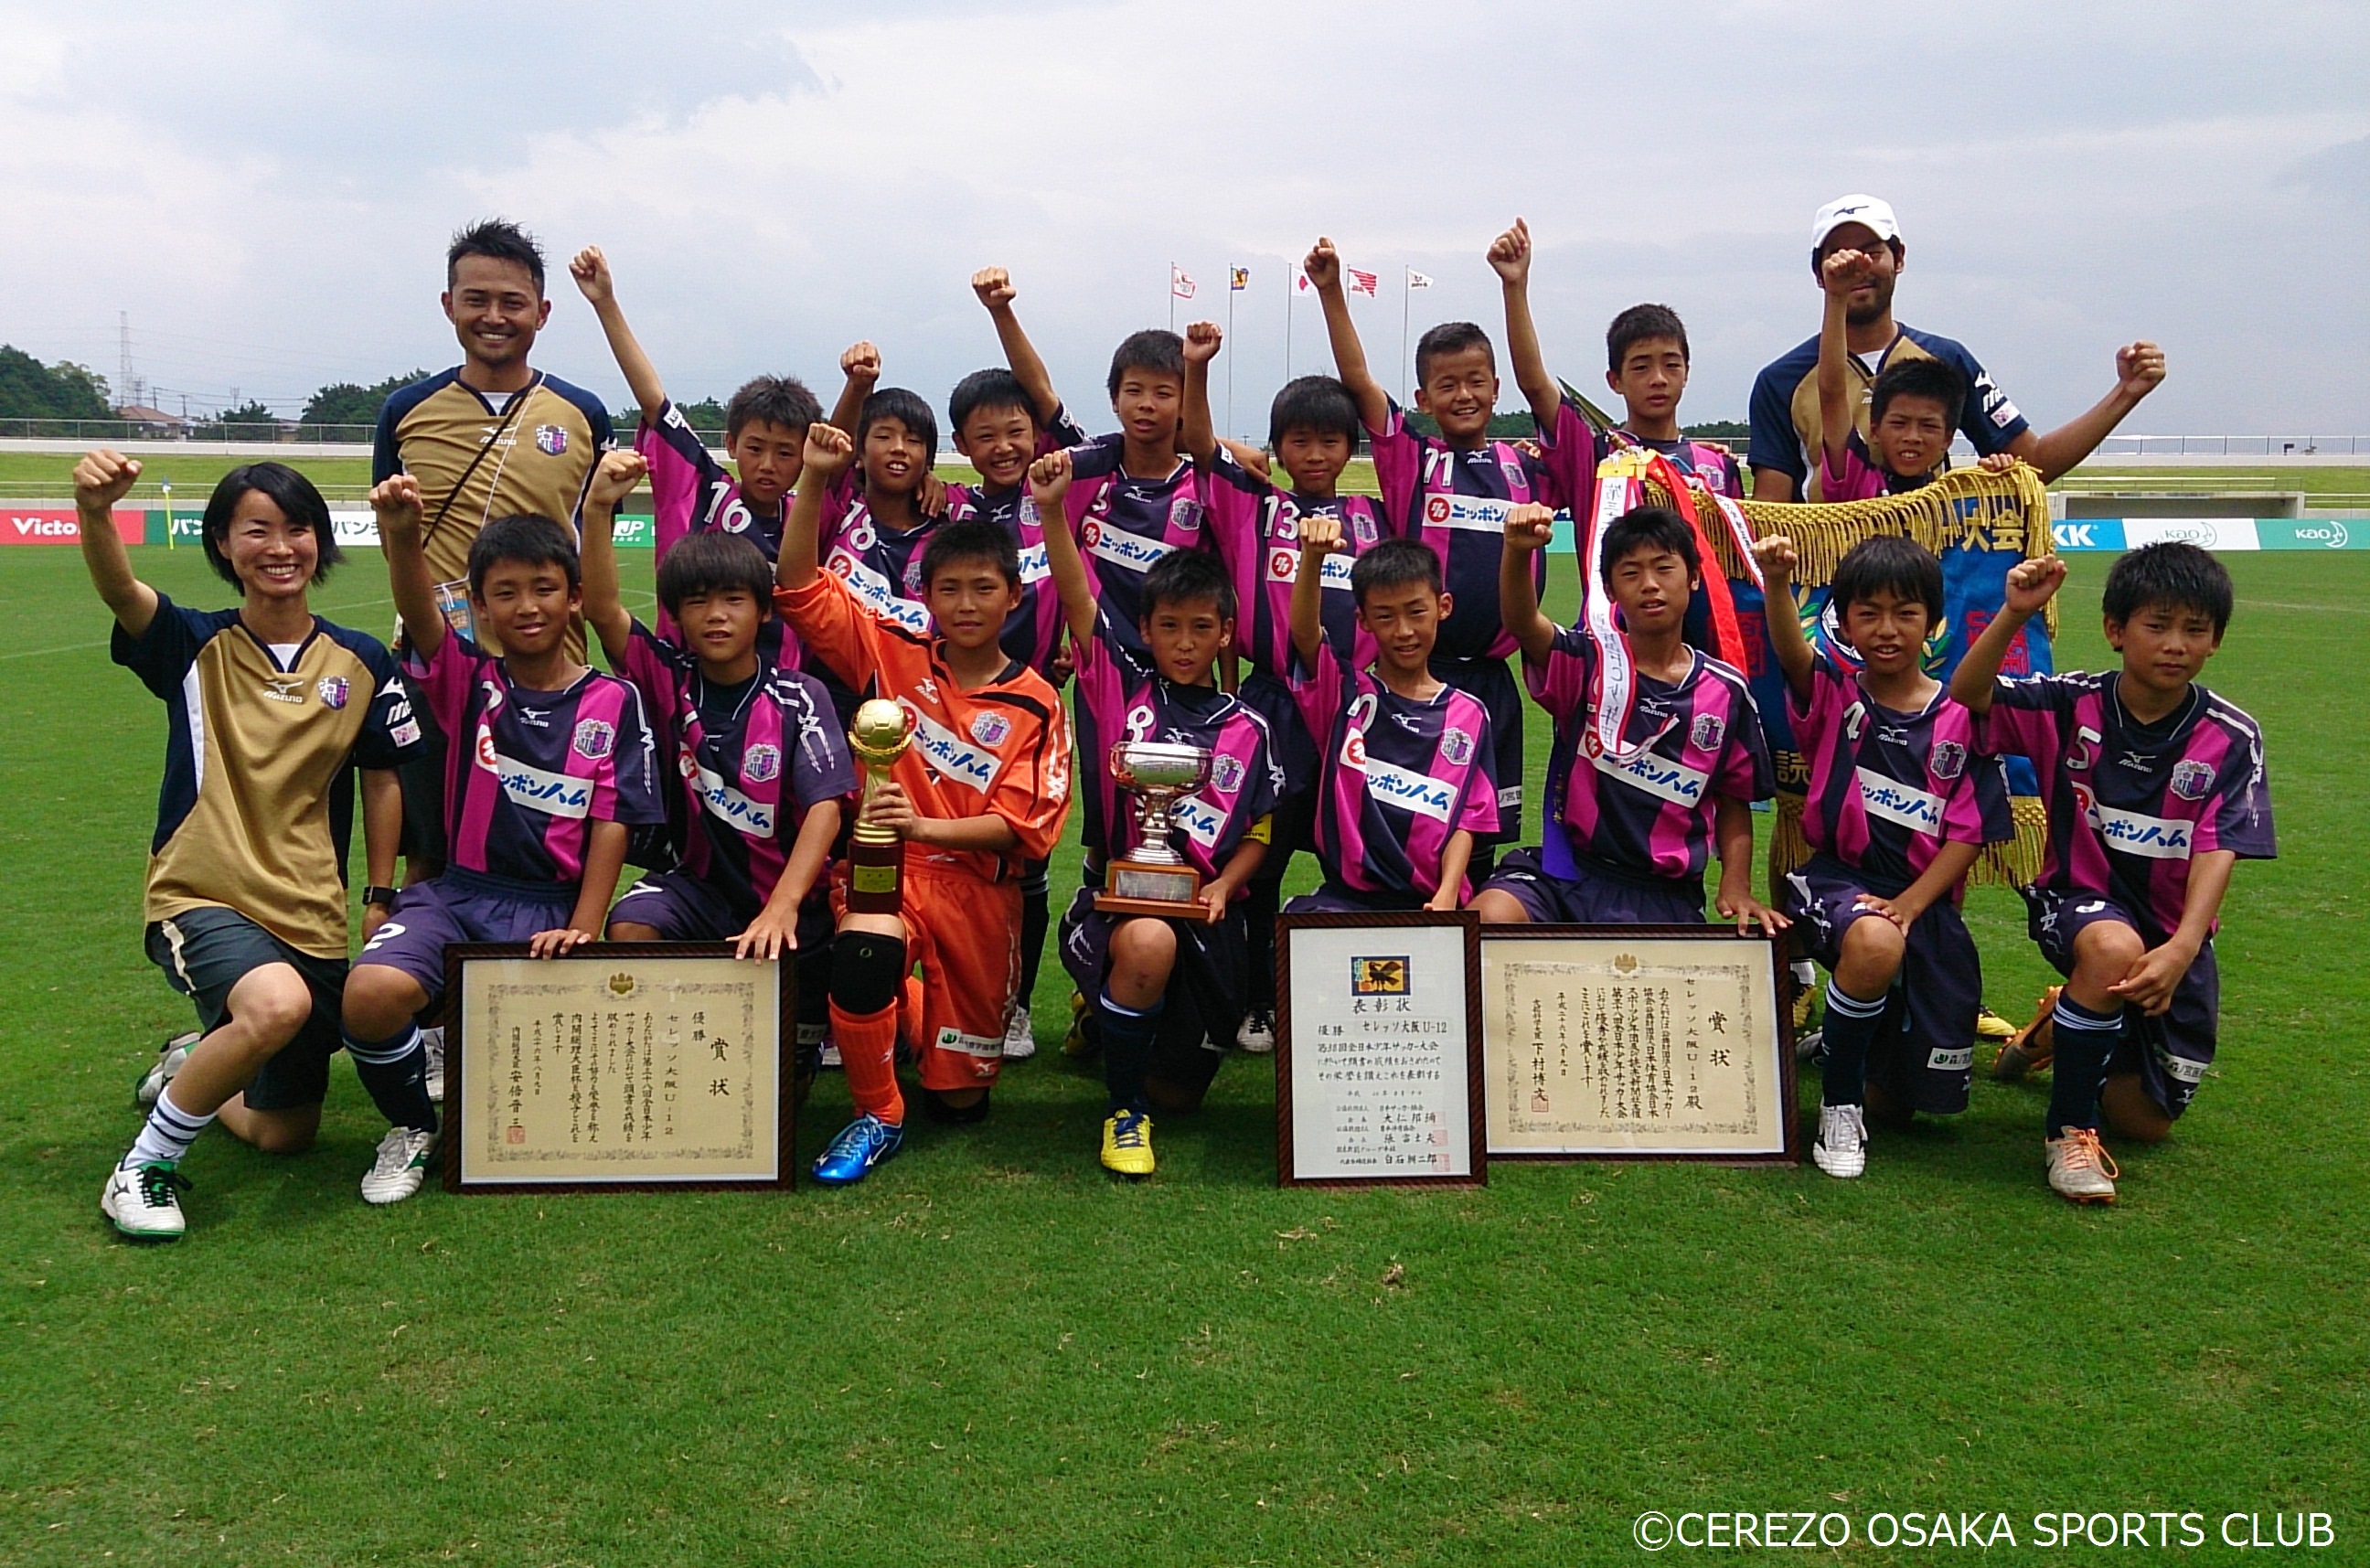 8 9 本学と連携するセレッソ大阪u 12が全日本少年サッカー大会で優勝 森ノ宮医療大学